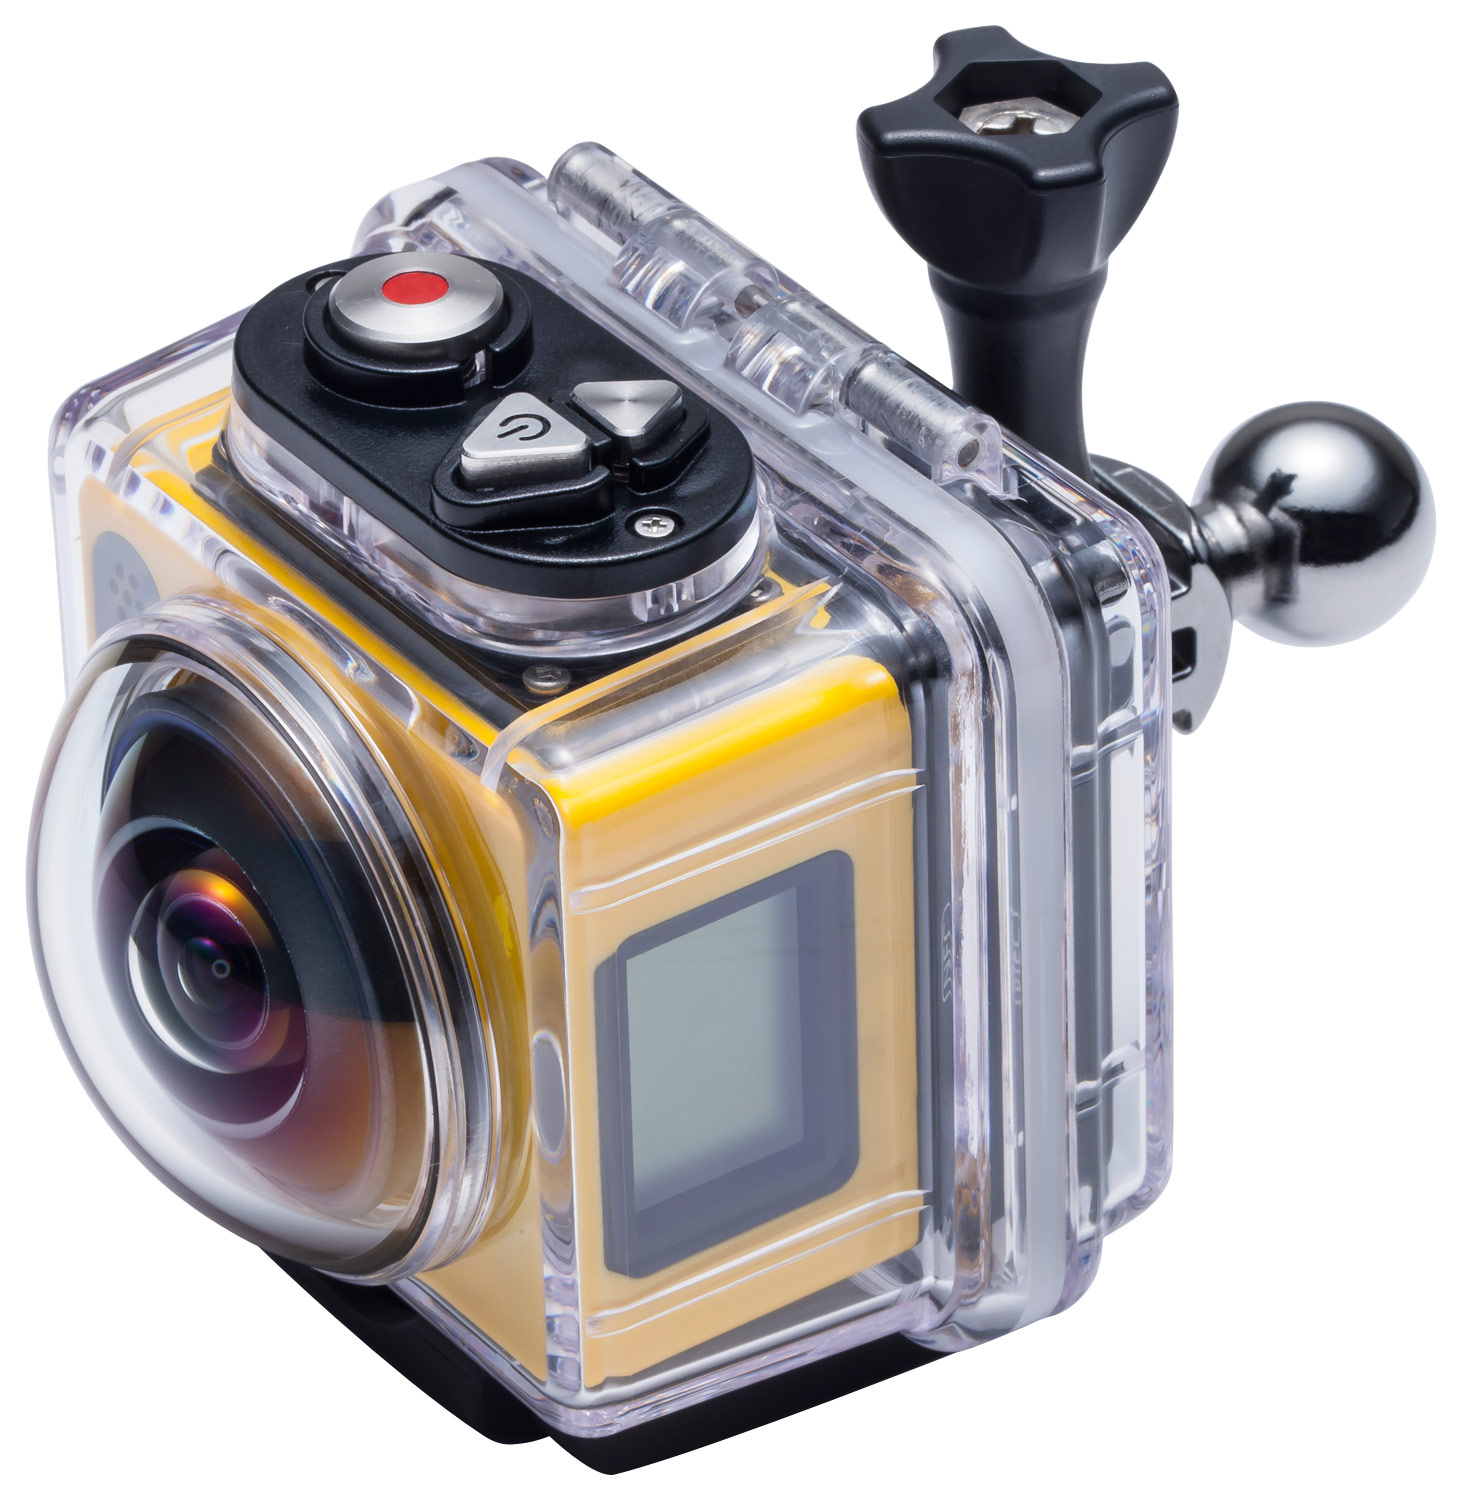 Kodak PIXPRO SP360 Action Cam with Explorer Accessory Pack, 1080p